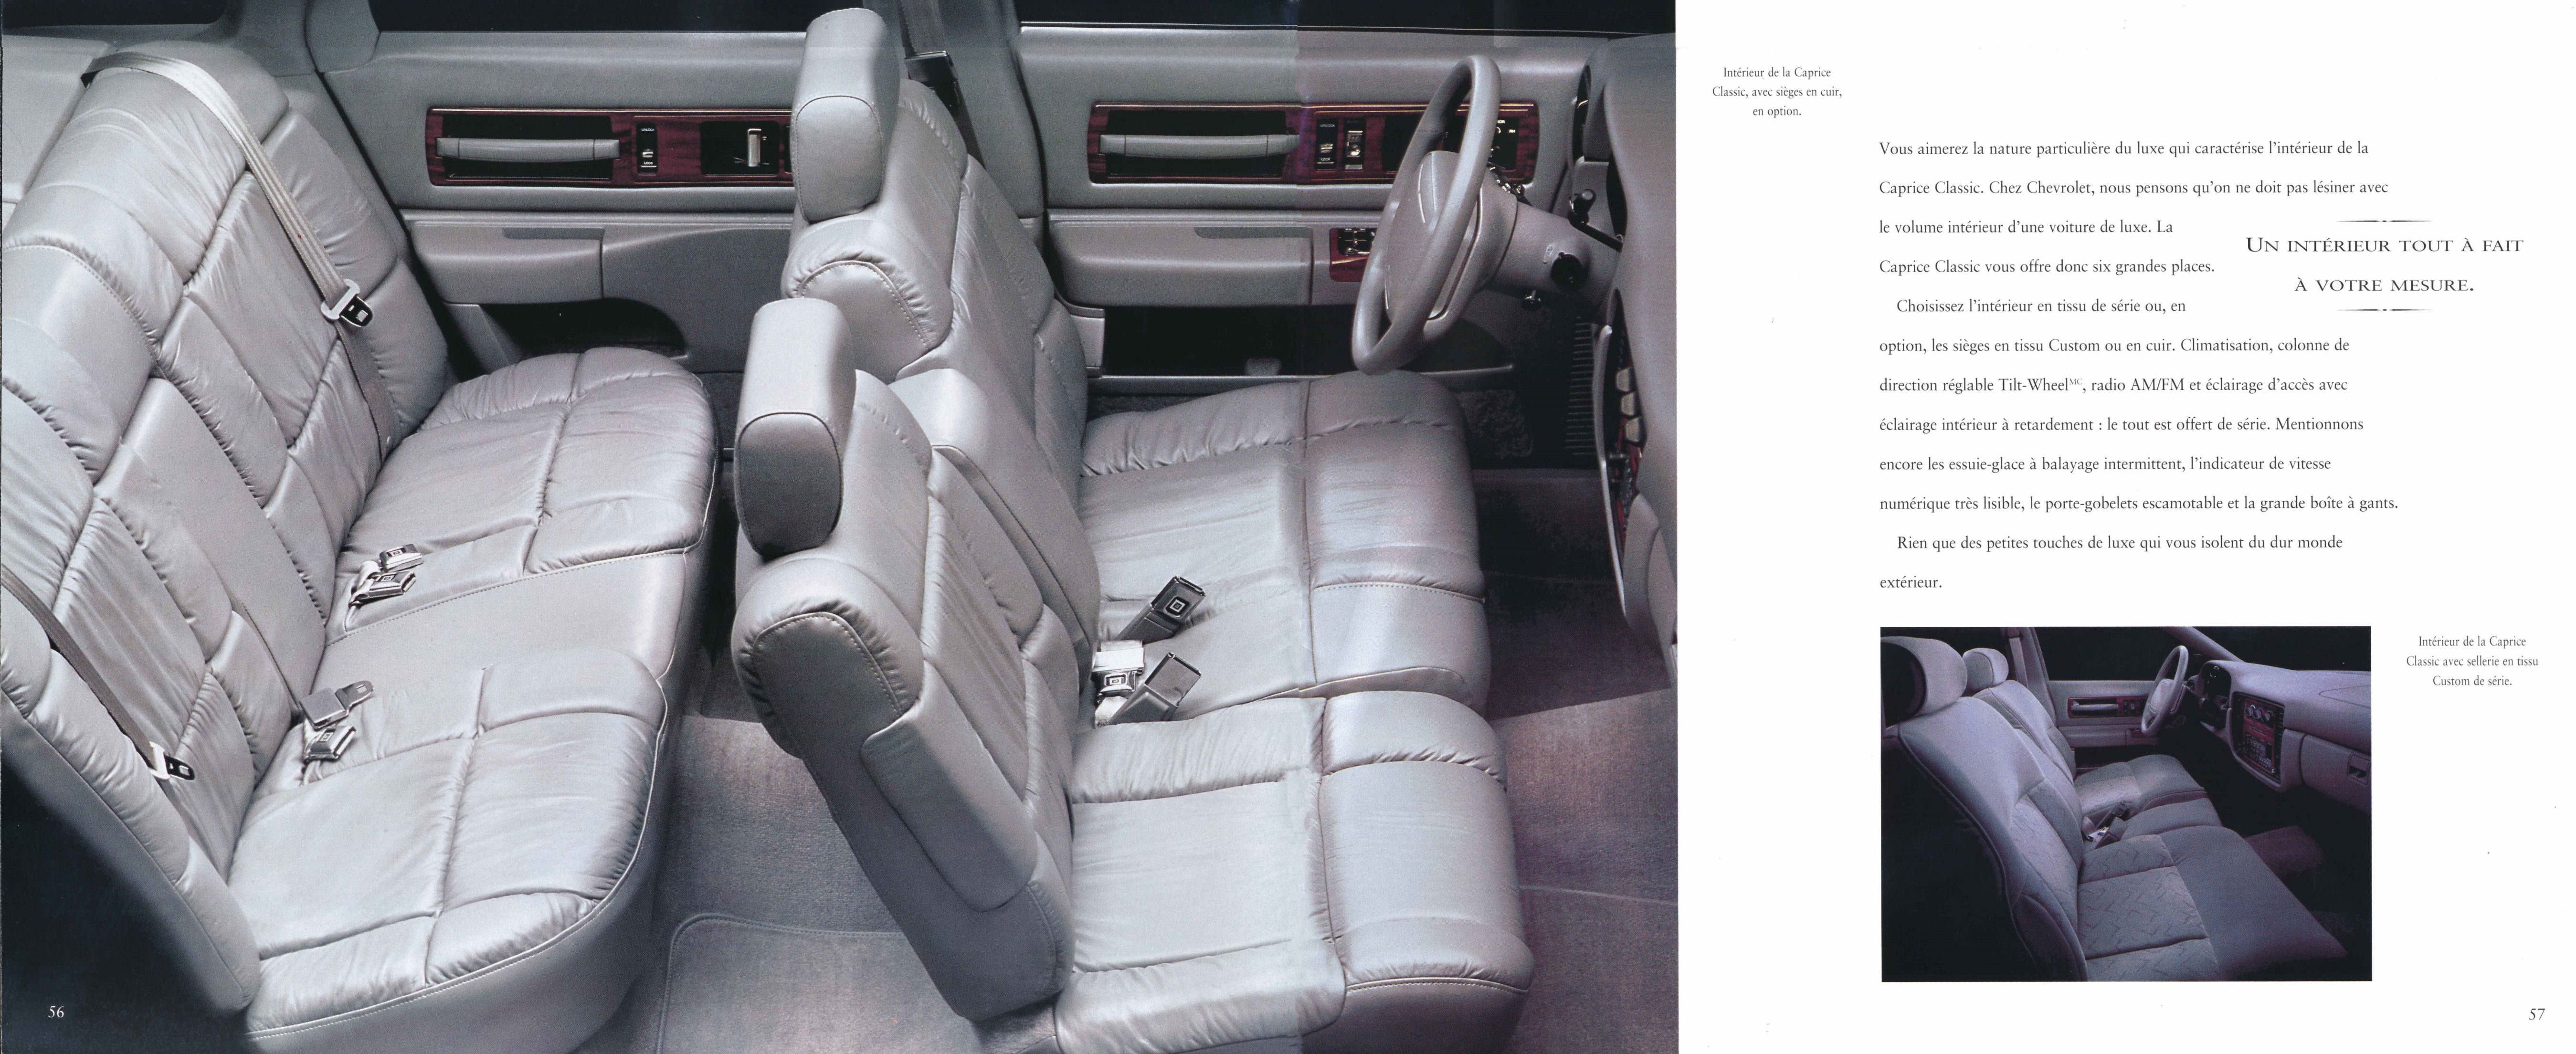 1995_Chevrolet_Full_Line_Cdn-Fr-56-57